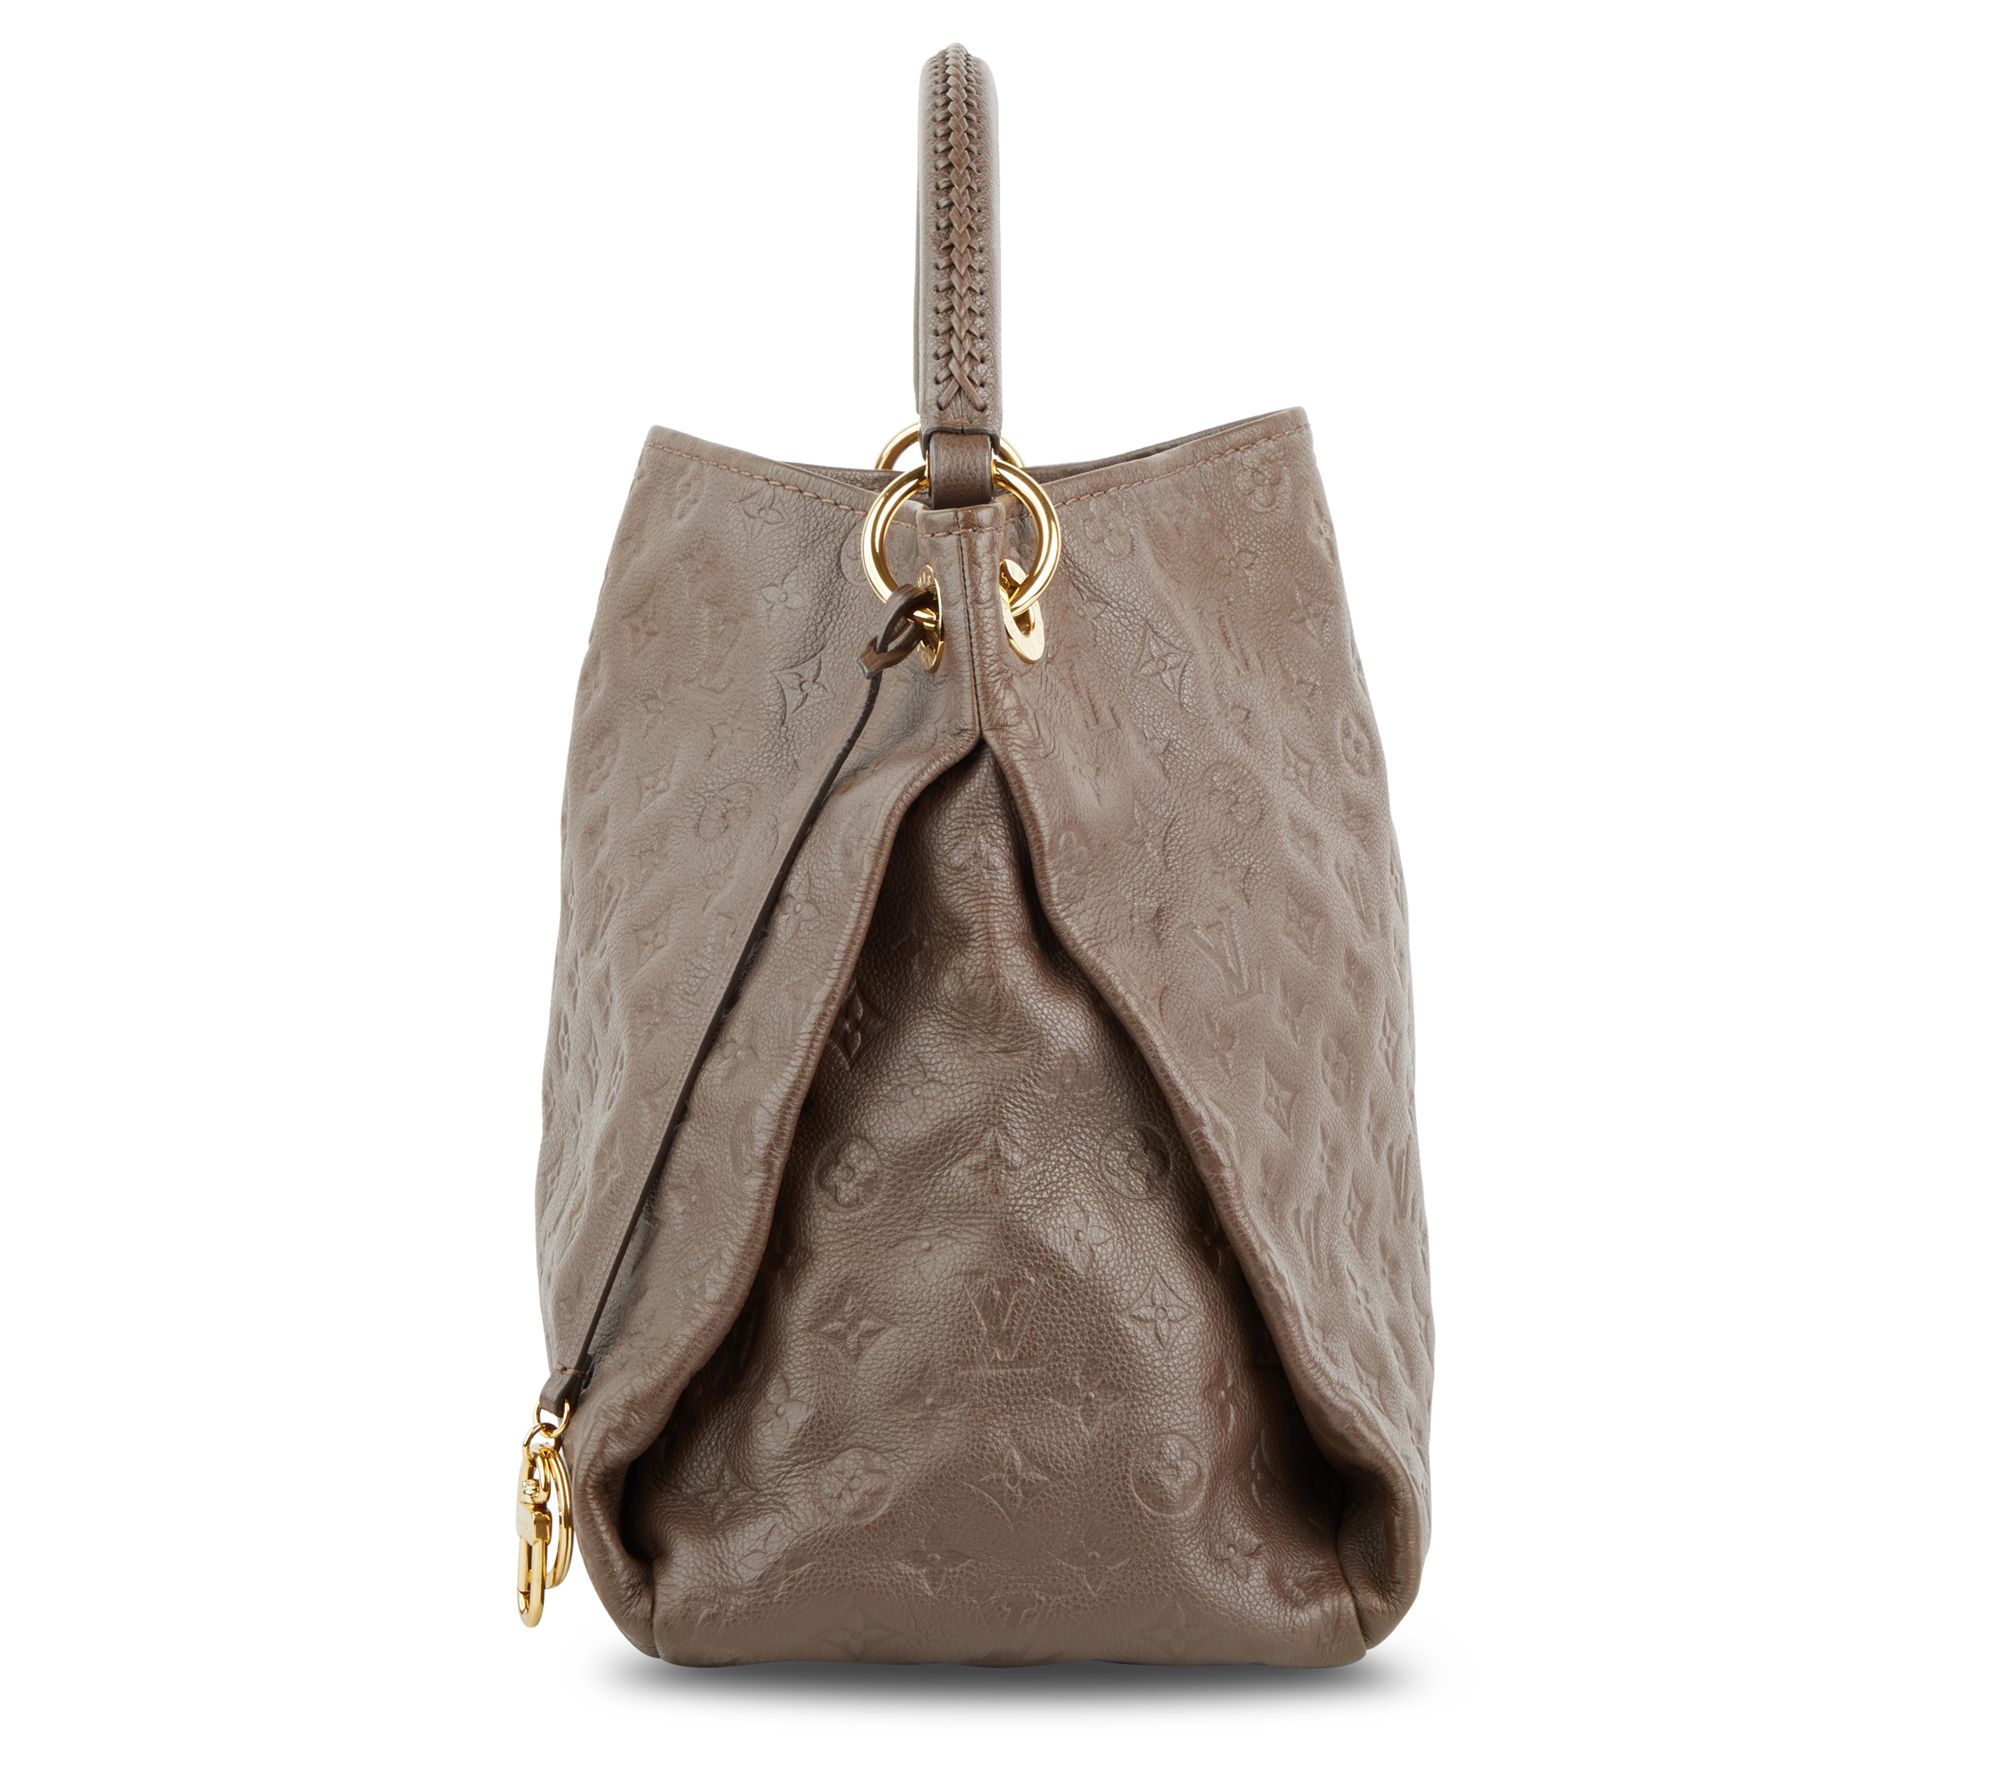 Louis Vuitton Artsy Bag Review